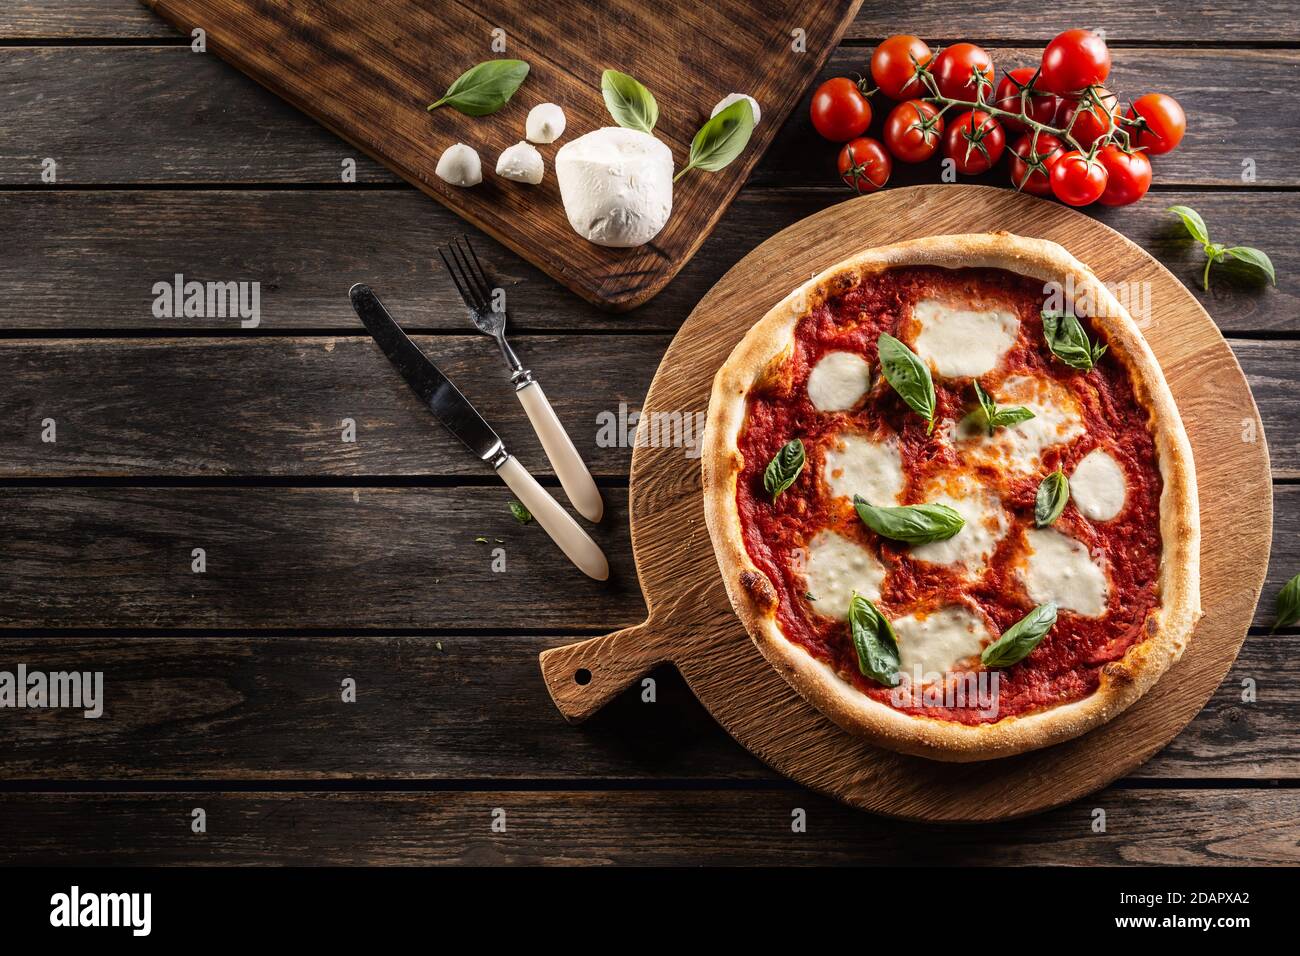 Pizza Napoletana - Napoli tomato sauce mozzarella and basil - top of view. Stock Photo